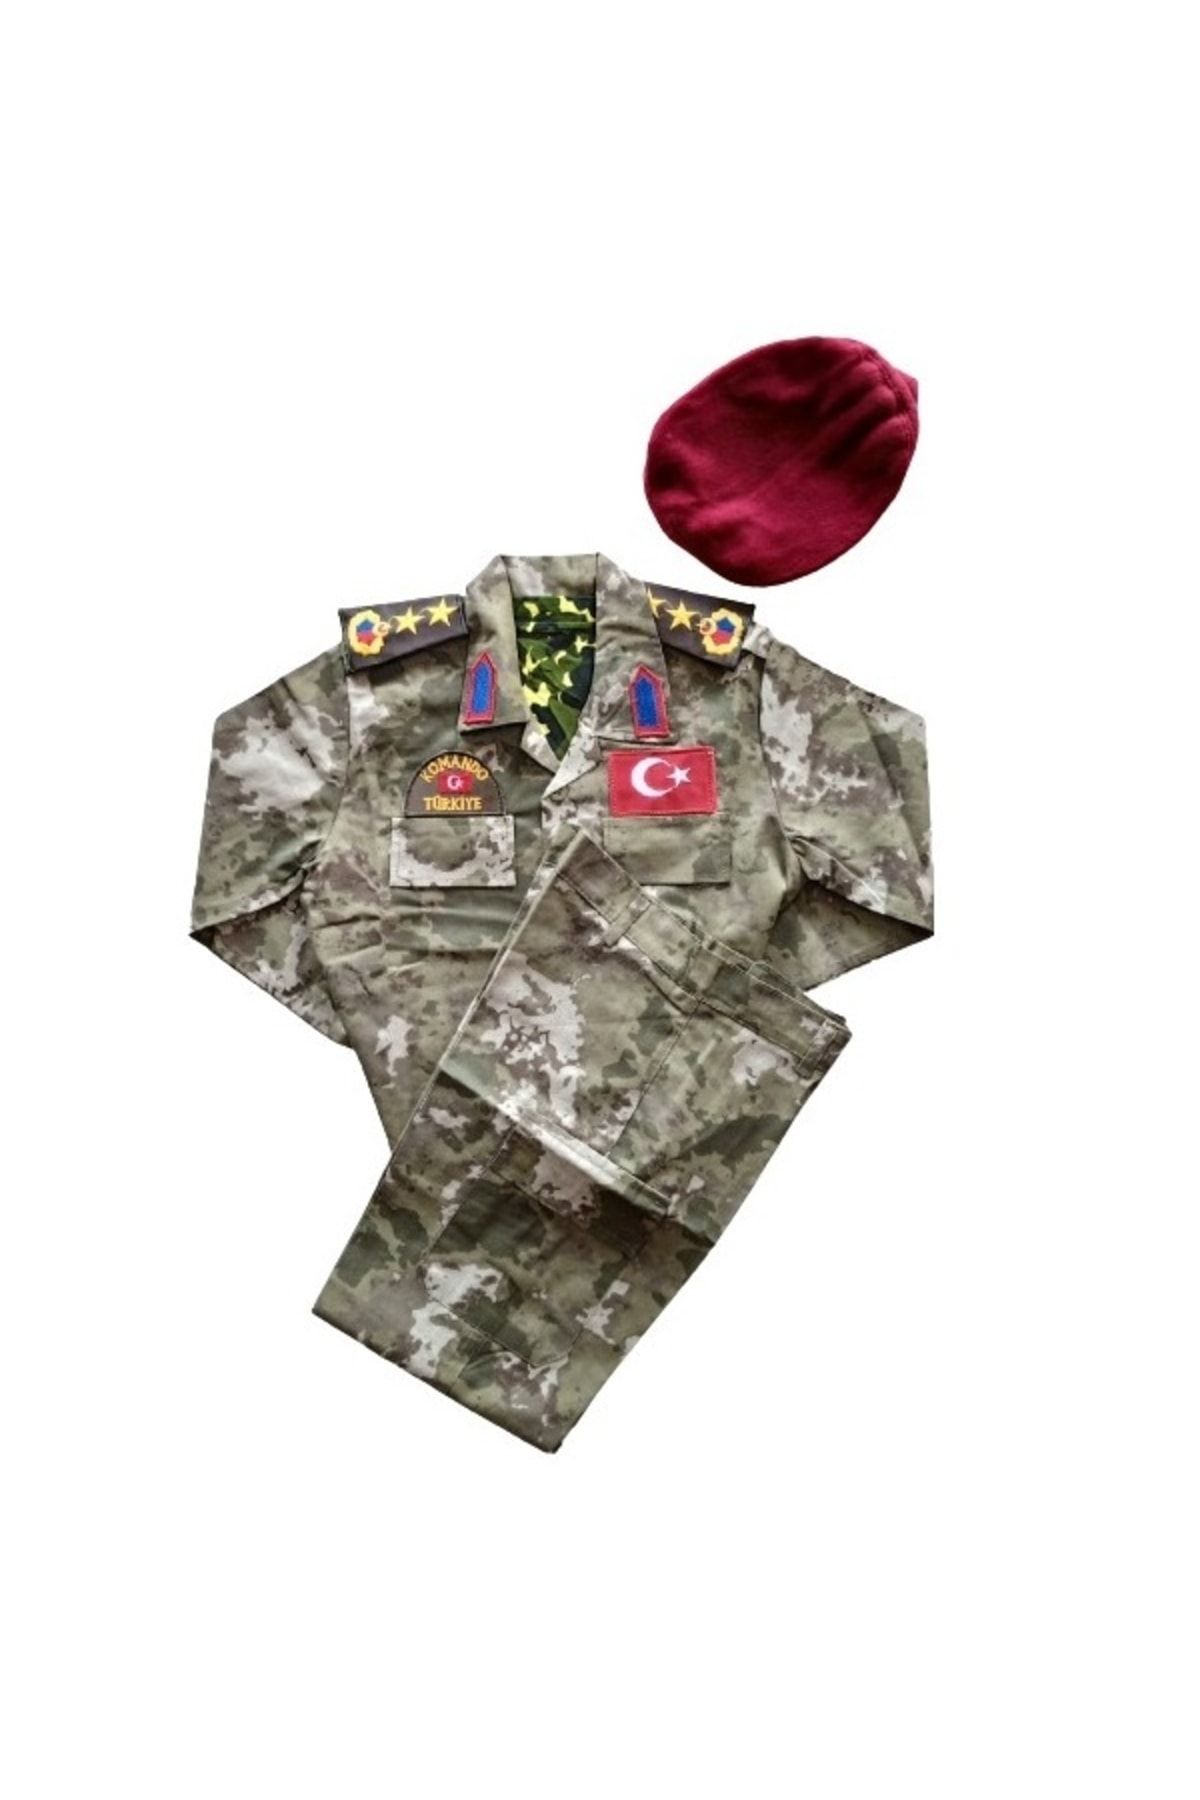 Temiz Pazar Erkek Çocuk Asker Komando Kıyafeti Kostüm